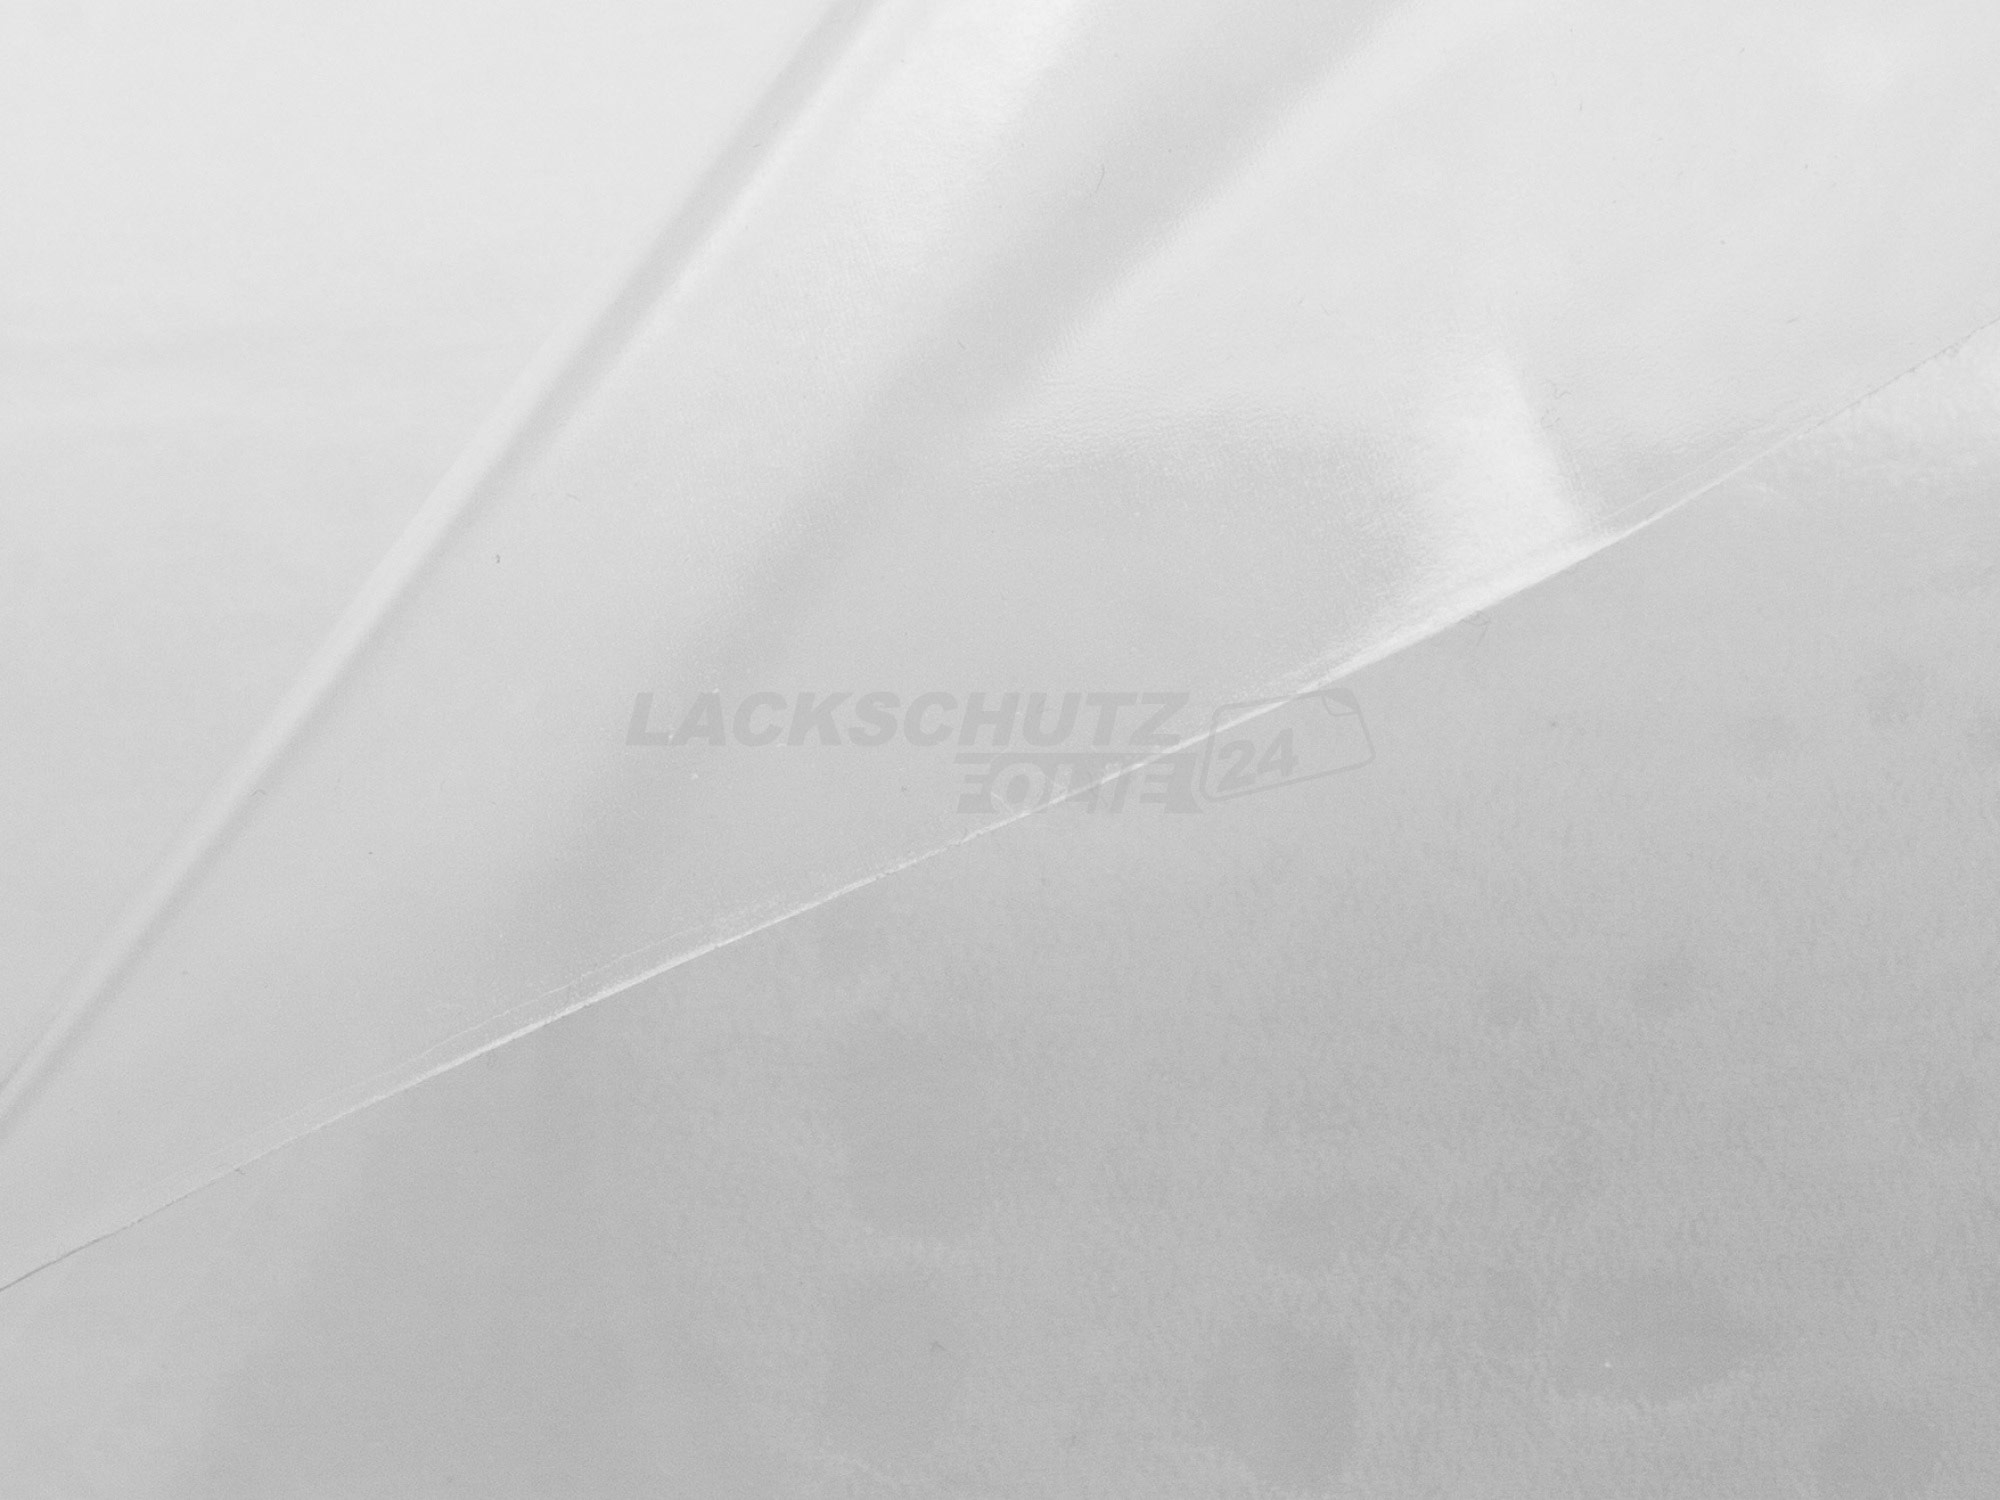 Ladekantenschutzfolie - Transparent Glatt Hochglänzend 150 µm stark für BMW 1er  Typ F20 / F21, ab BJ 09/2011-01/2015